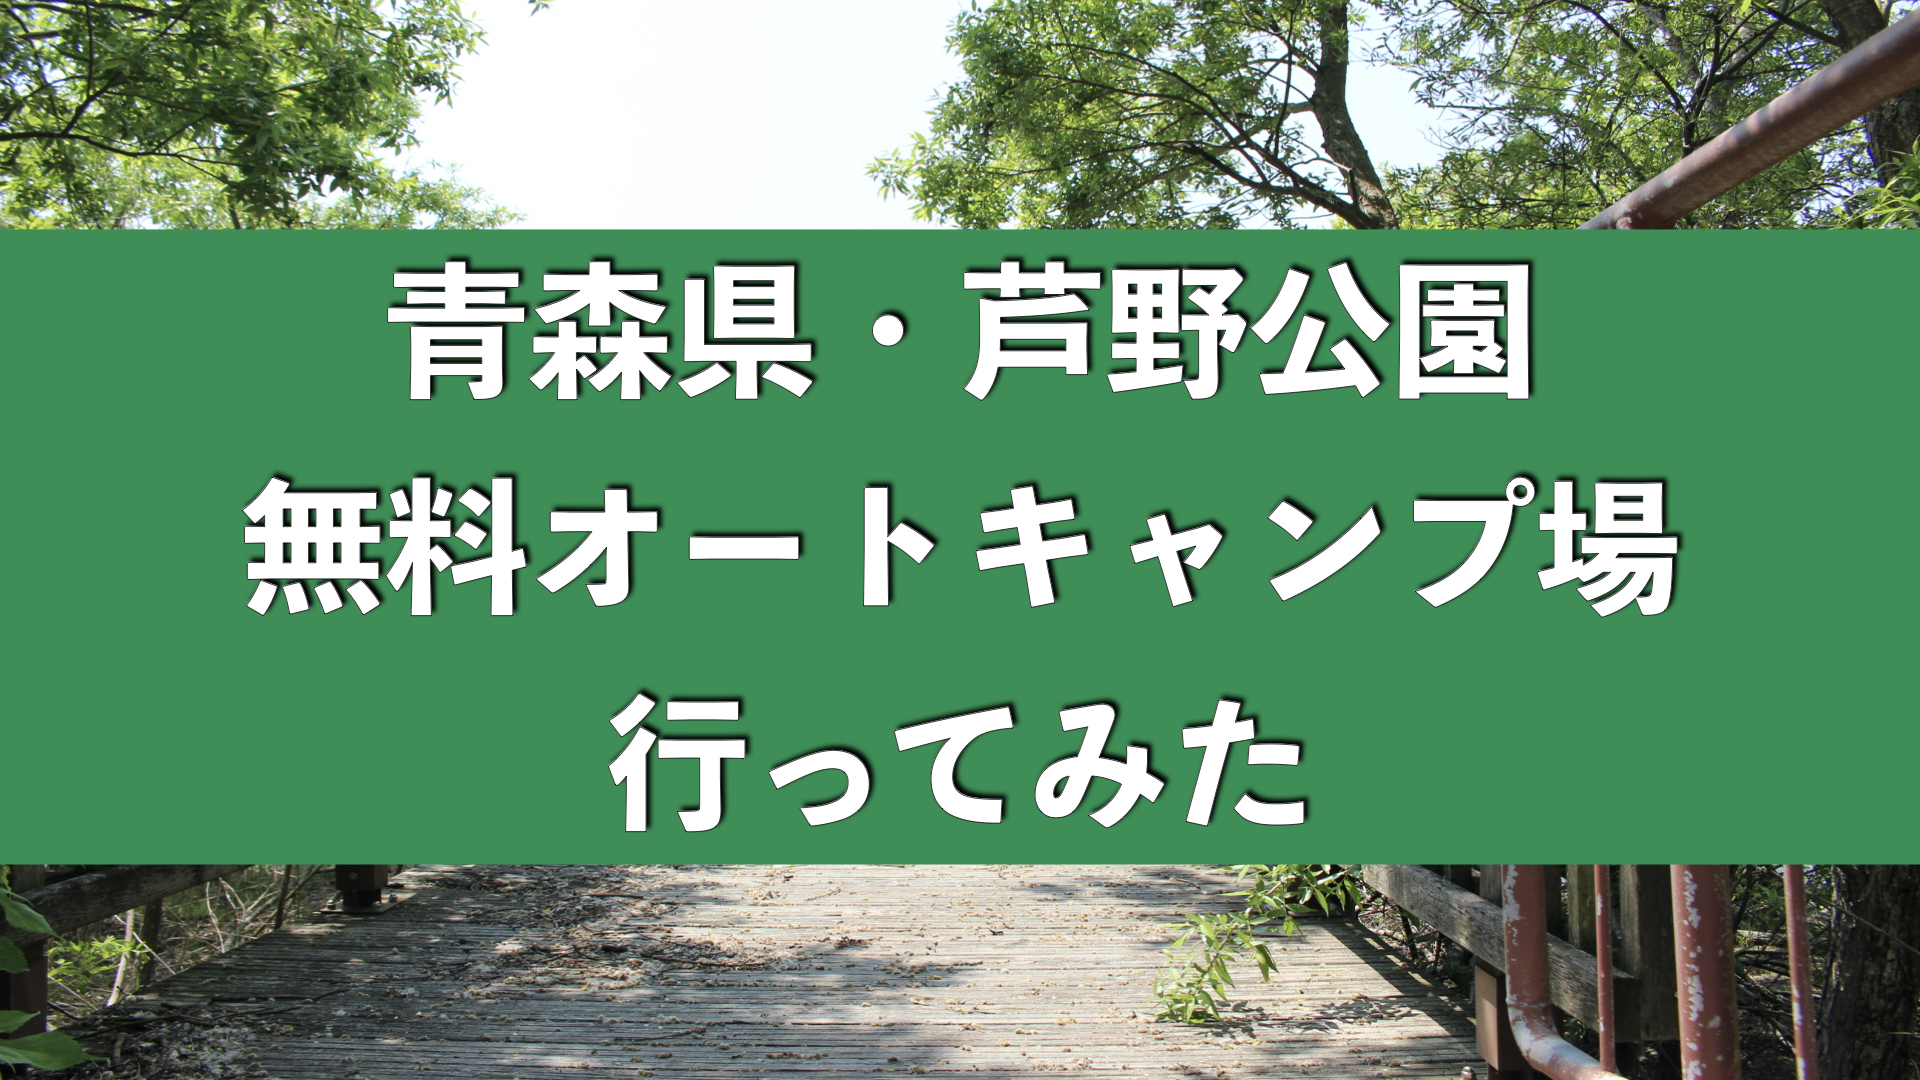 無料オートサイト 青森県 芦野公園にソロキャンプ行ってきた Rino Blog